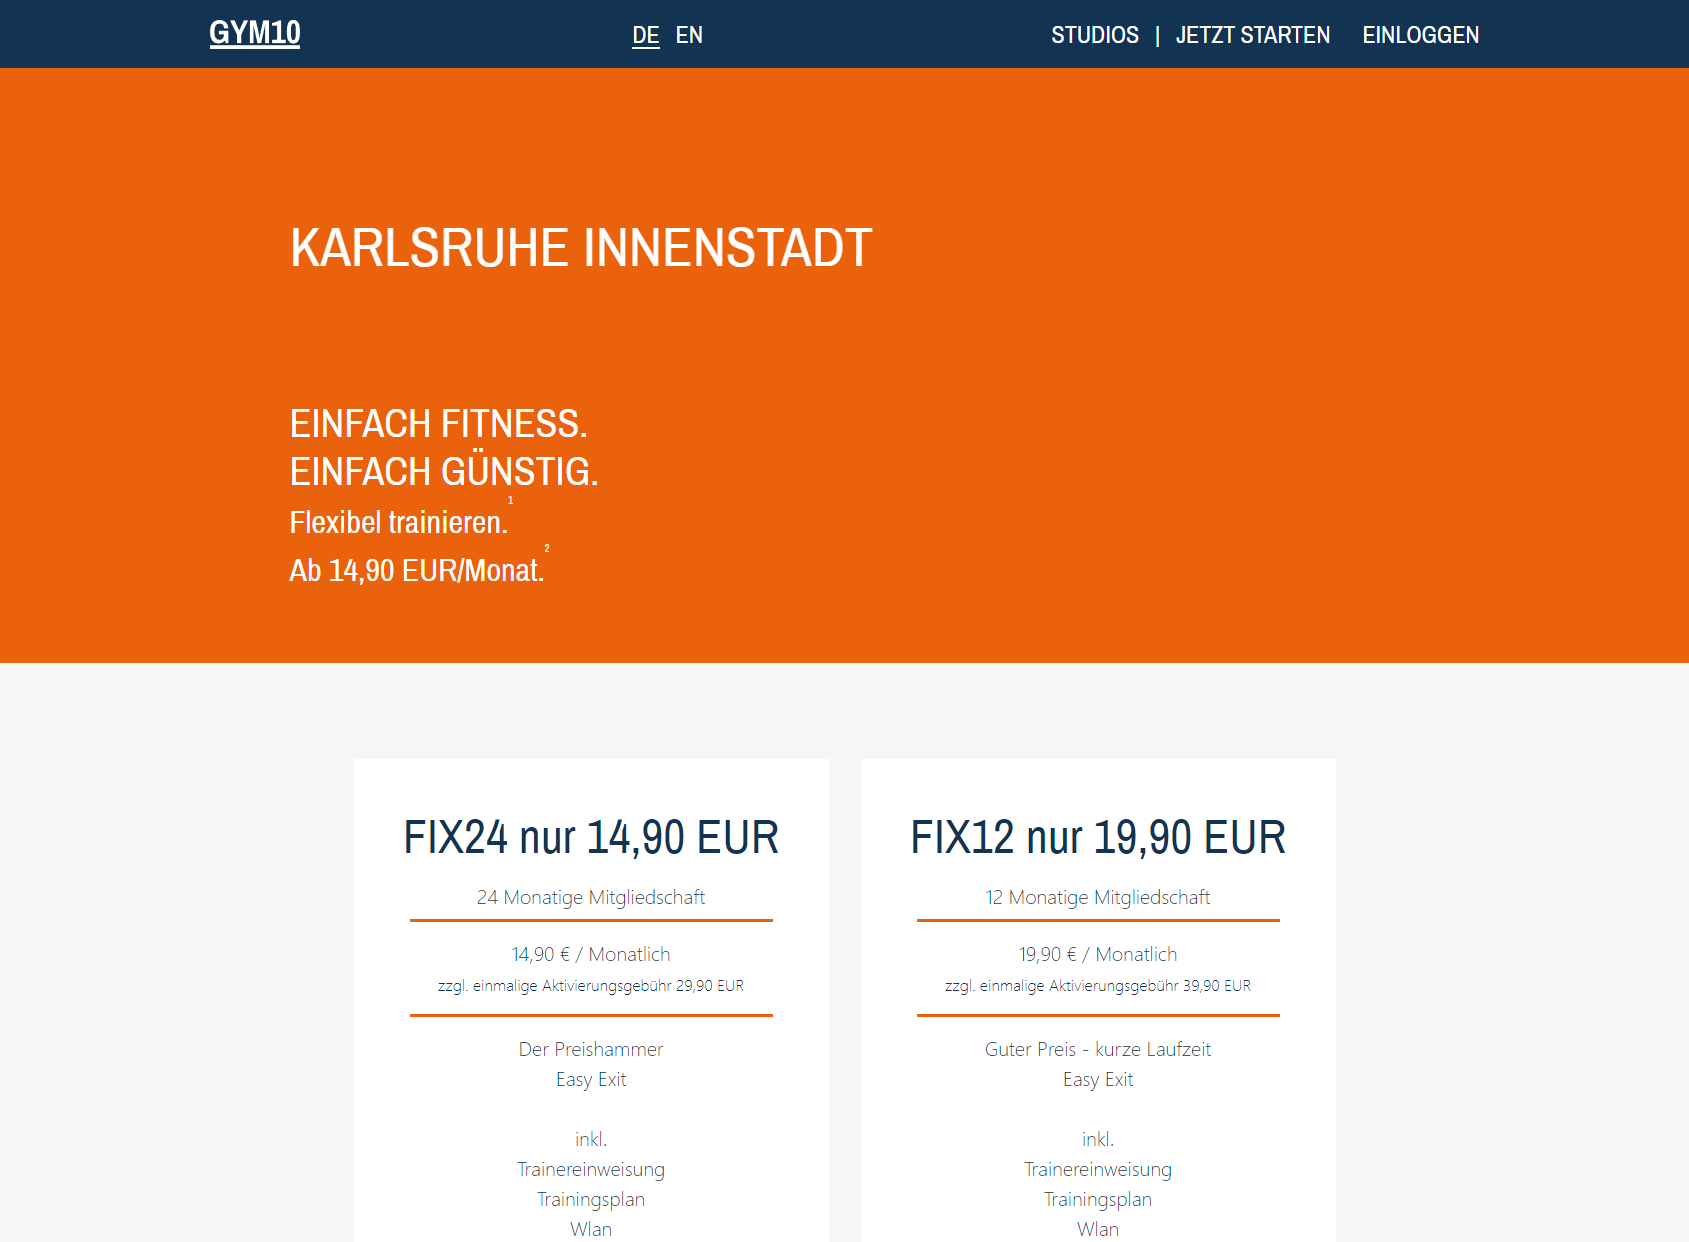 GYM10 Karlsruhe Innenstadt - Fitness ab 14,90 EUR/Monat